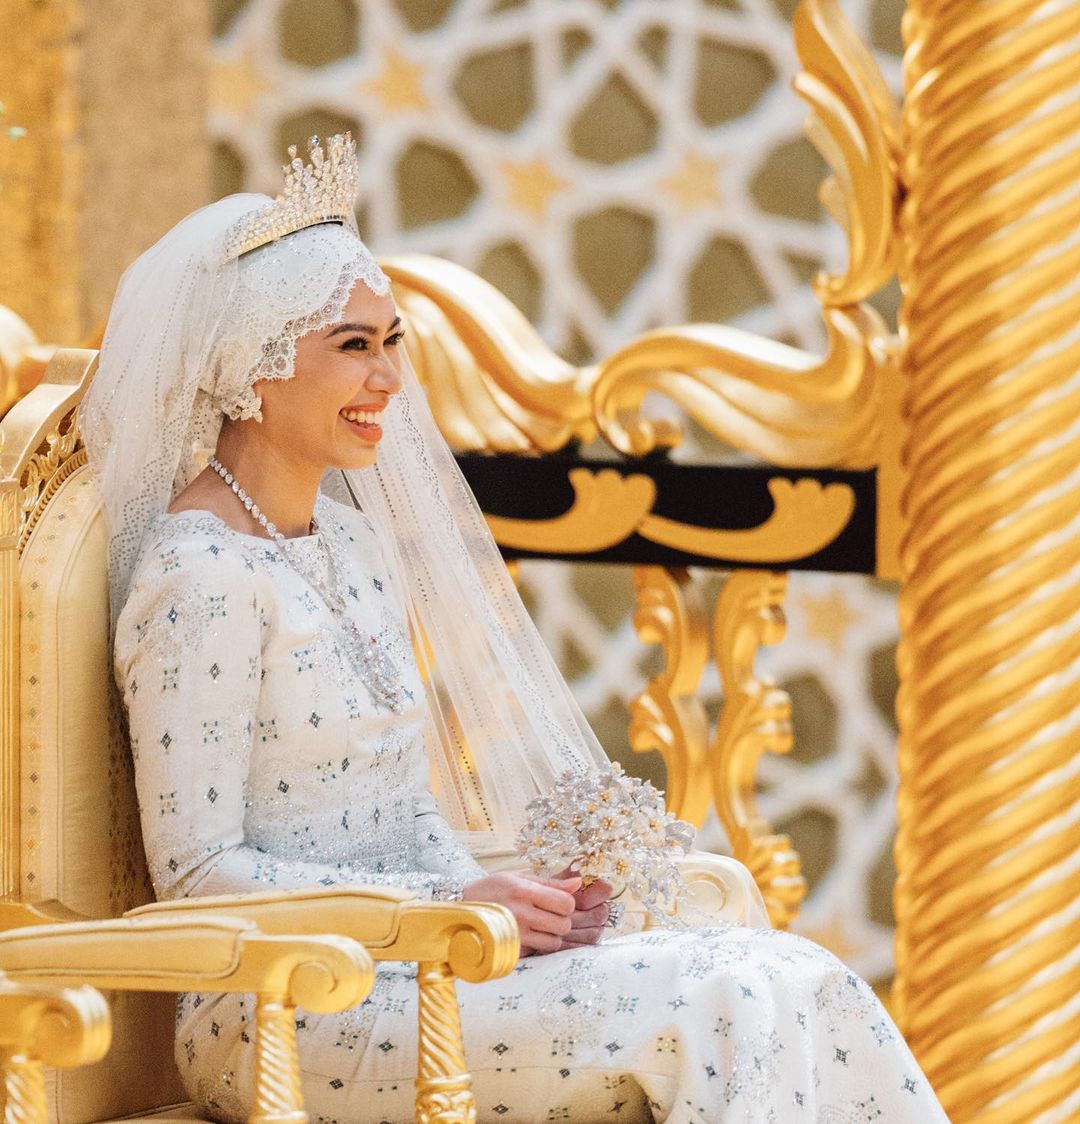 Бриллианты, золото, парча: дочь султана Брунея вышла замуж